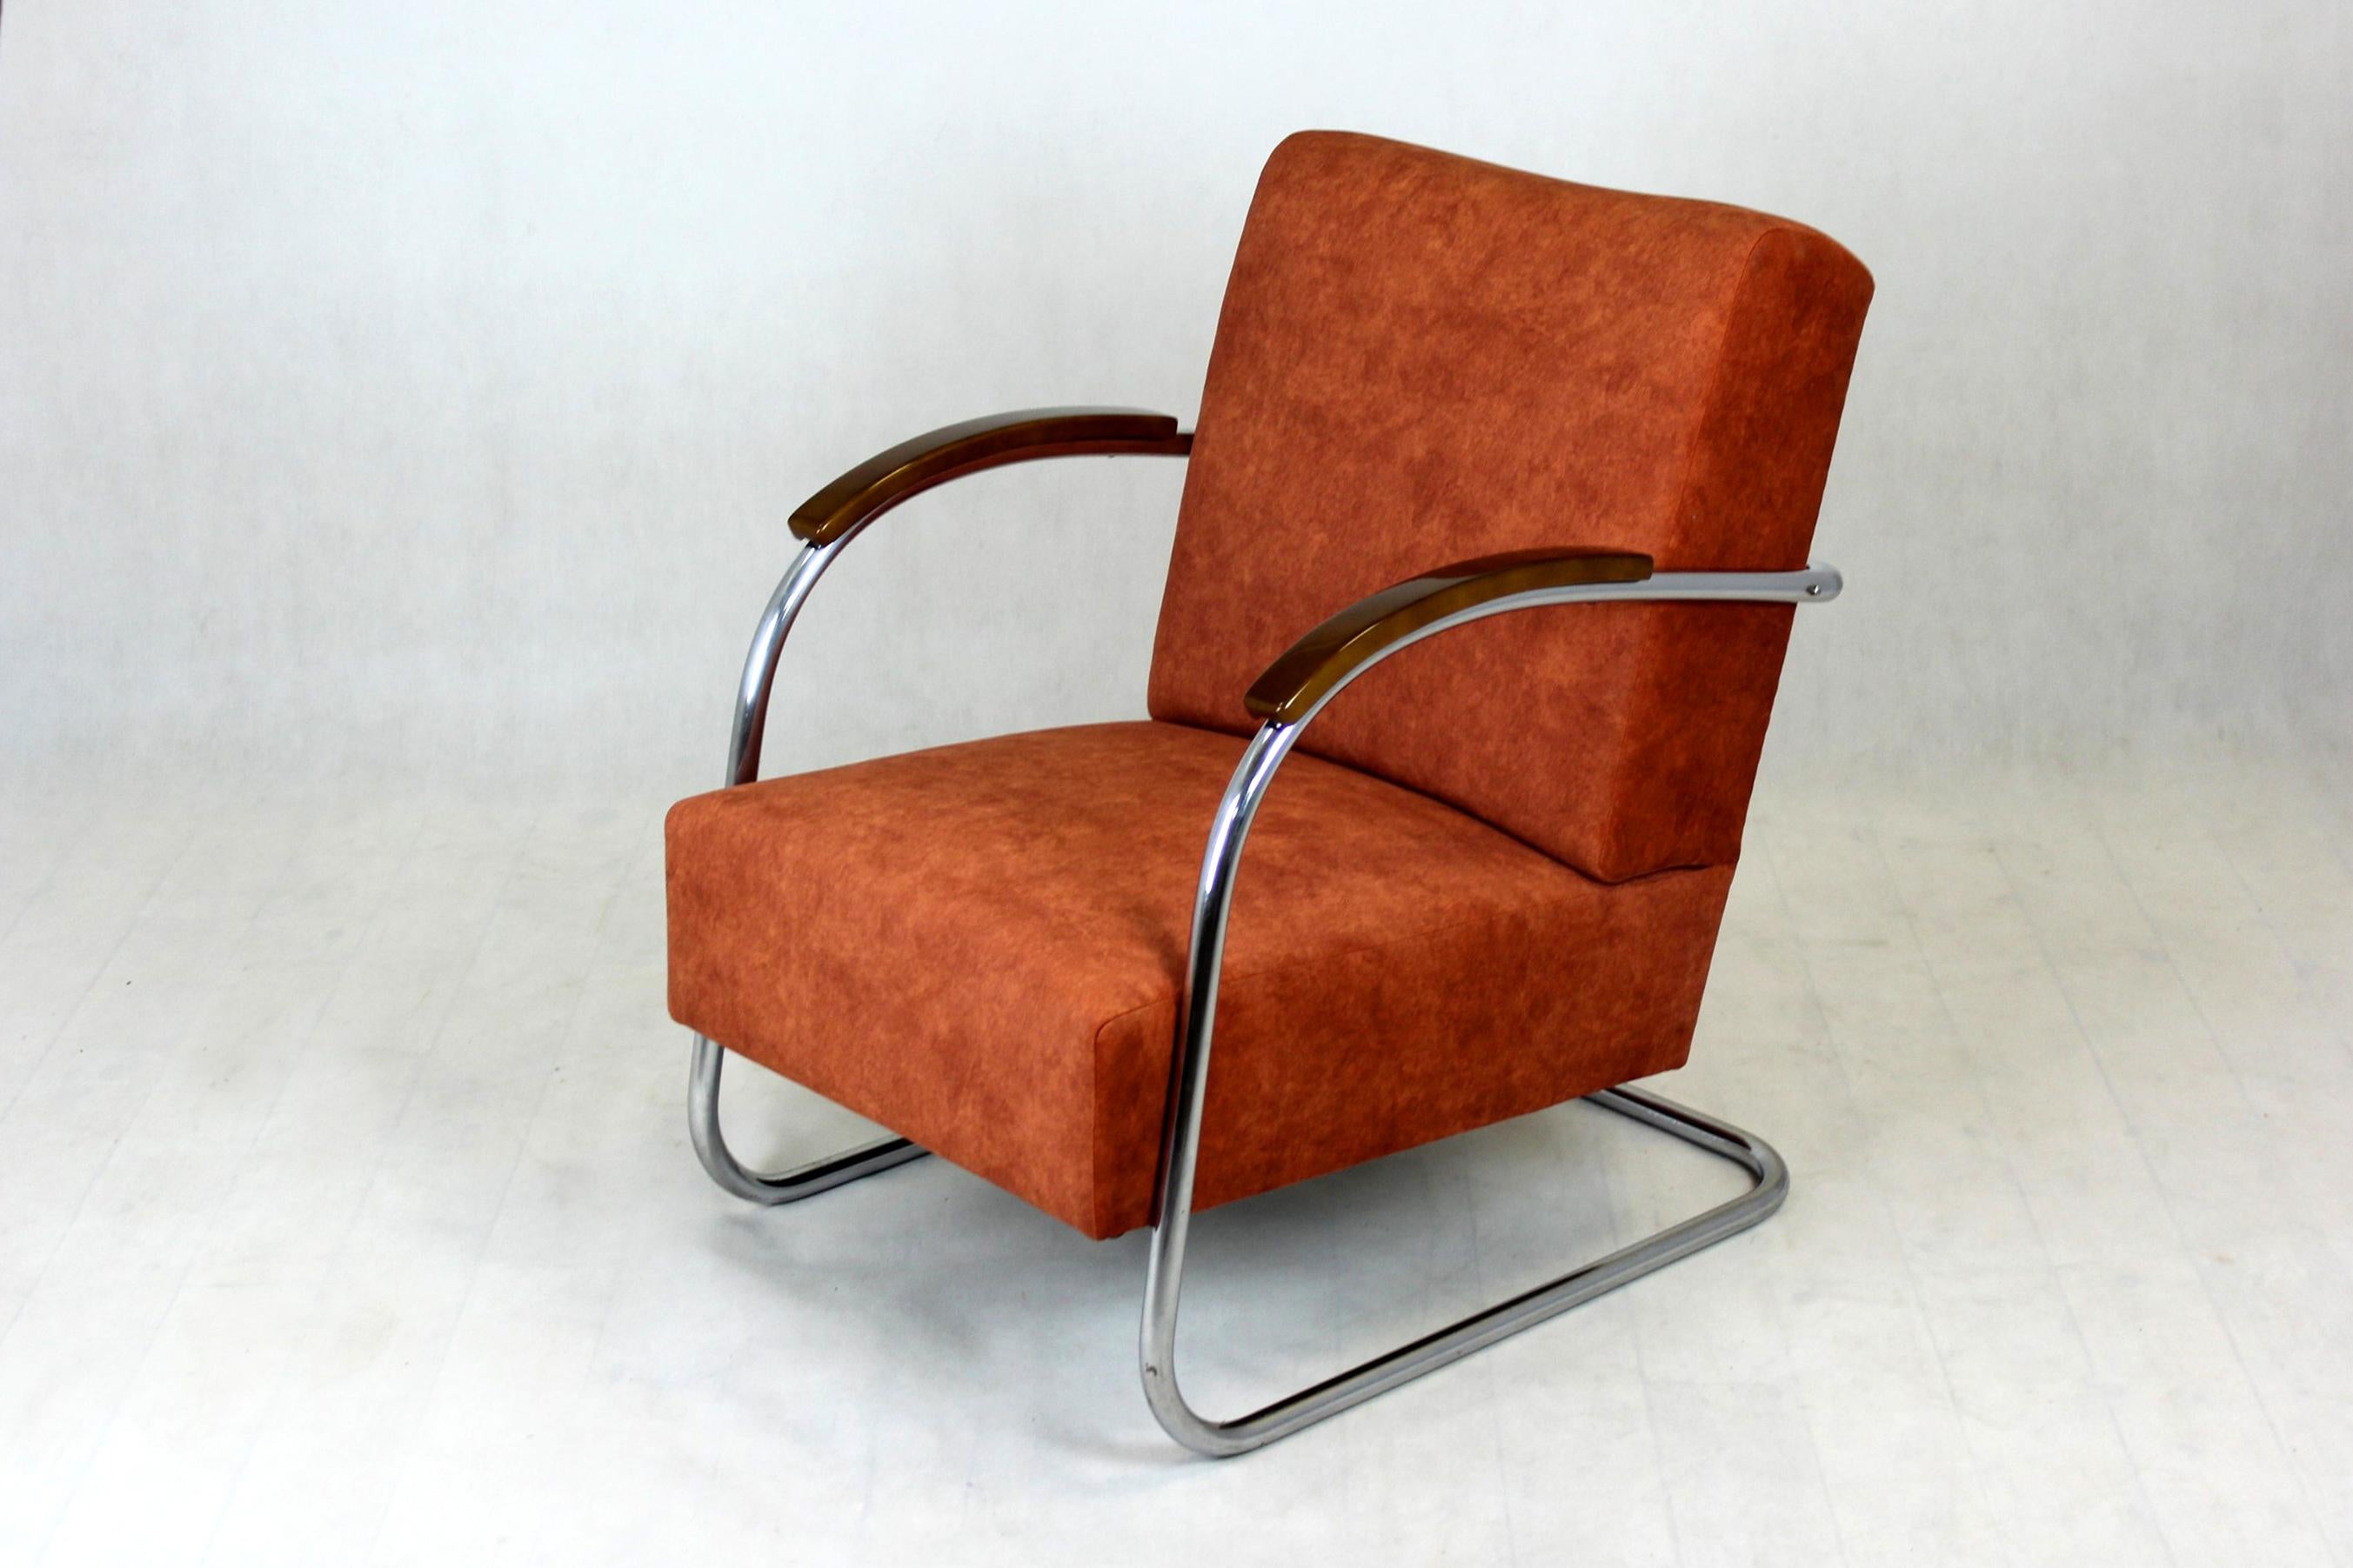 Restored Bauhaus Chromed Tubular Steel Armchair by Mücke Melder, 1930s For Sale 2